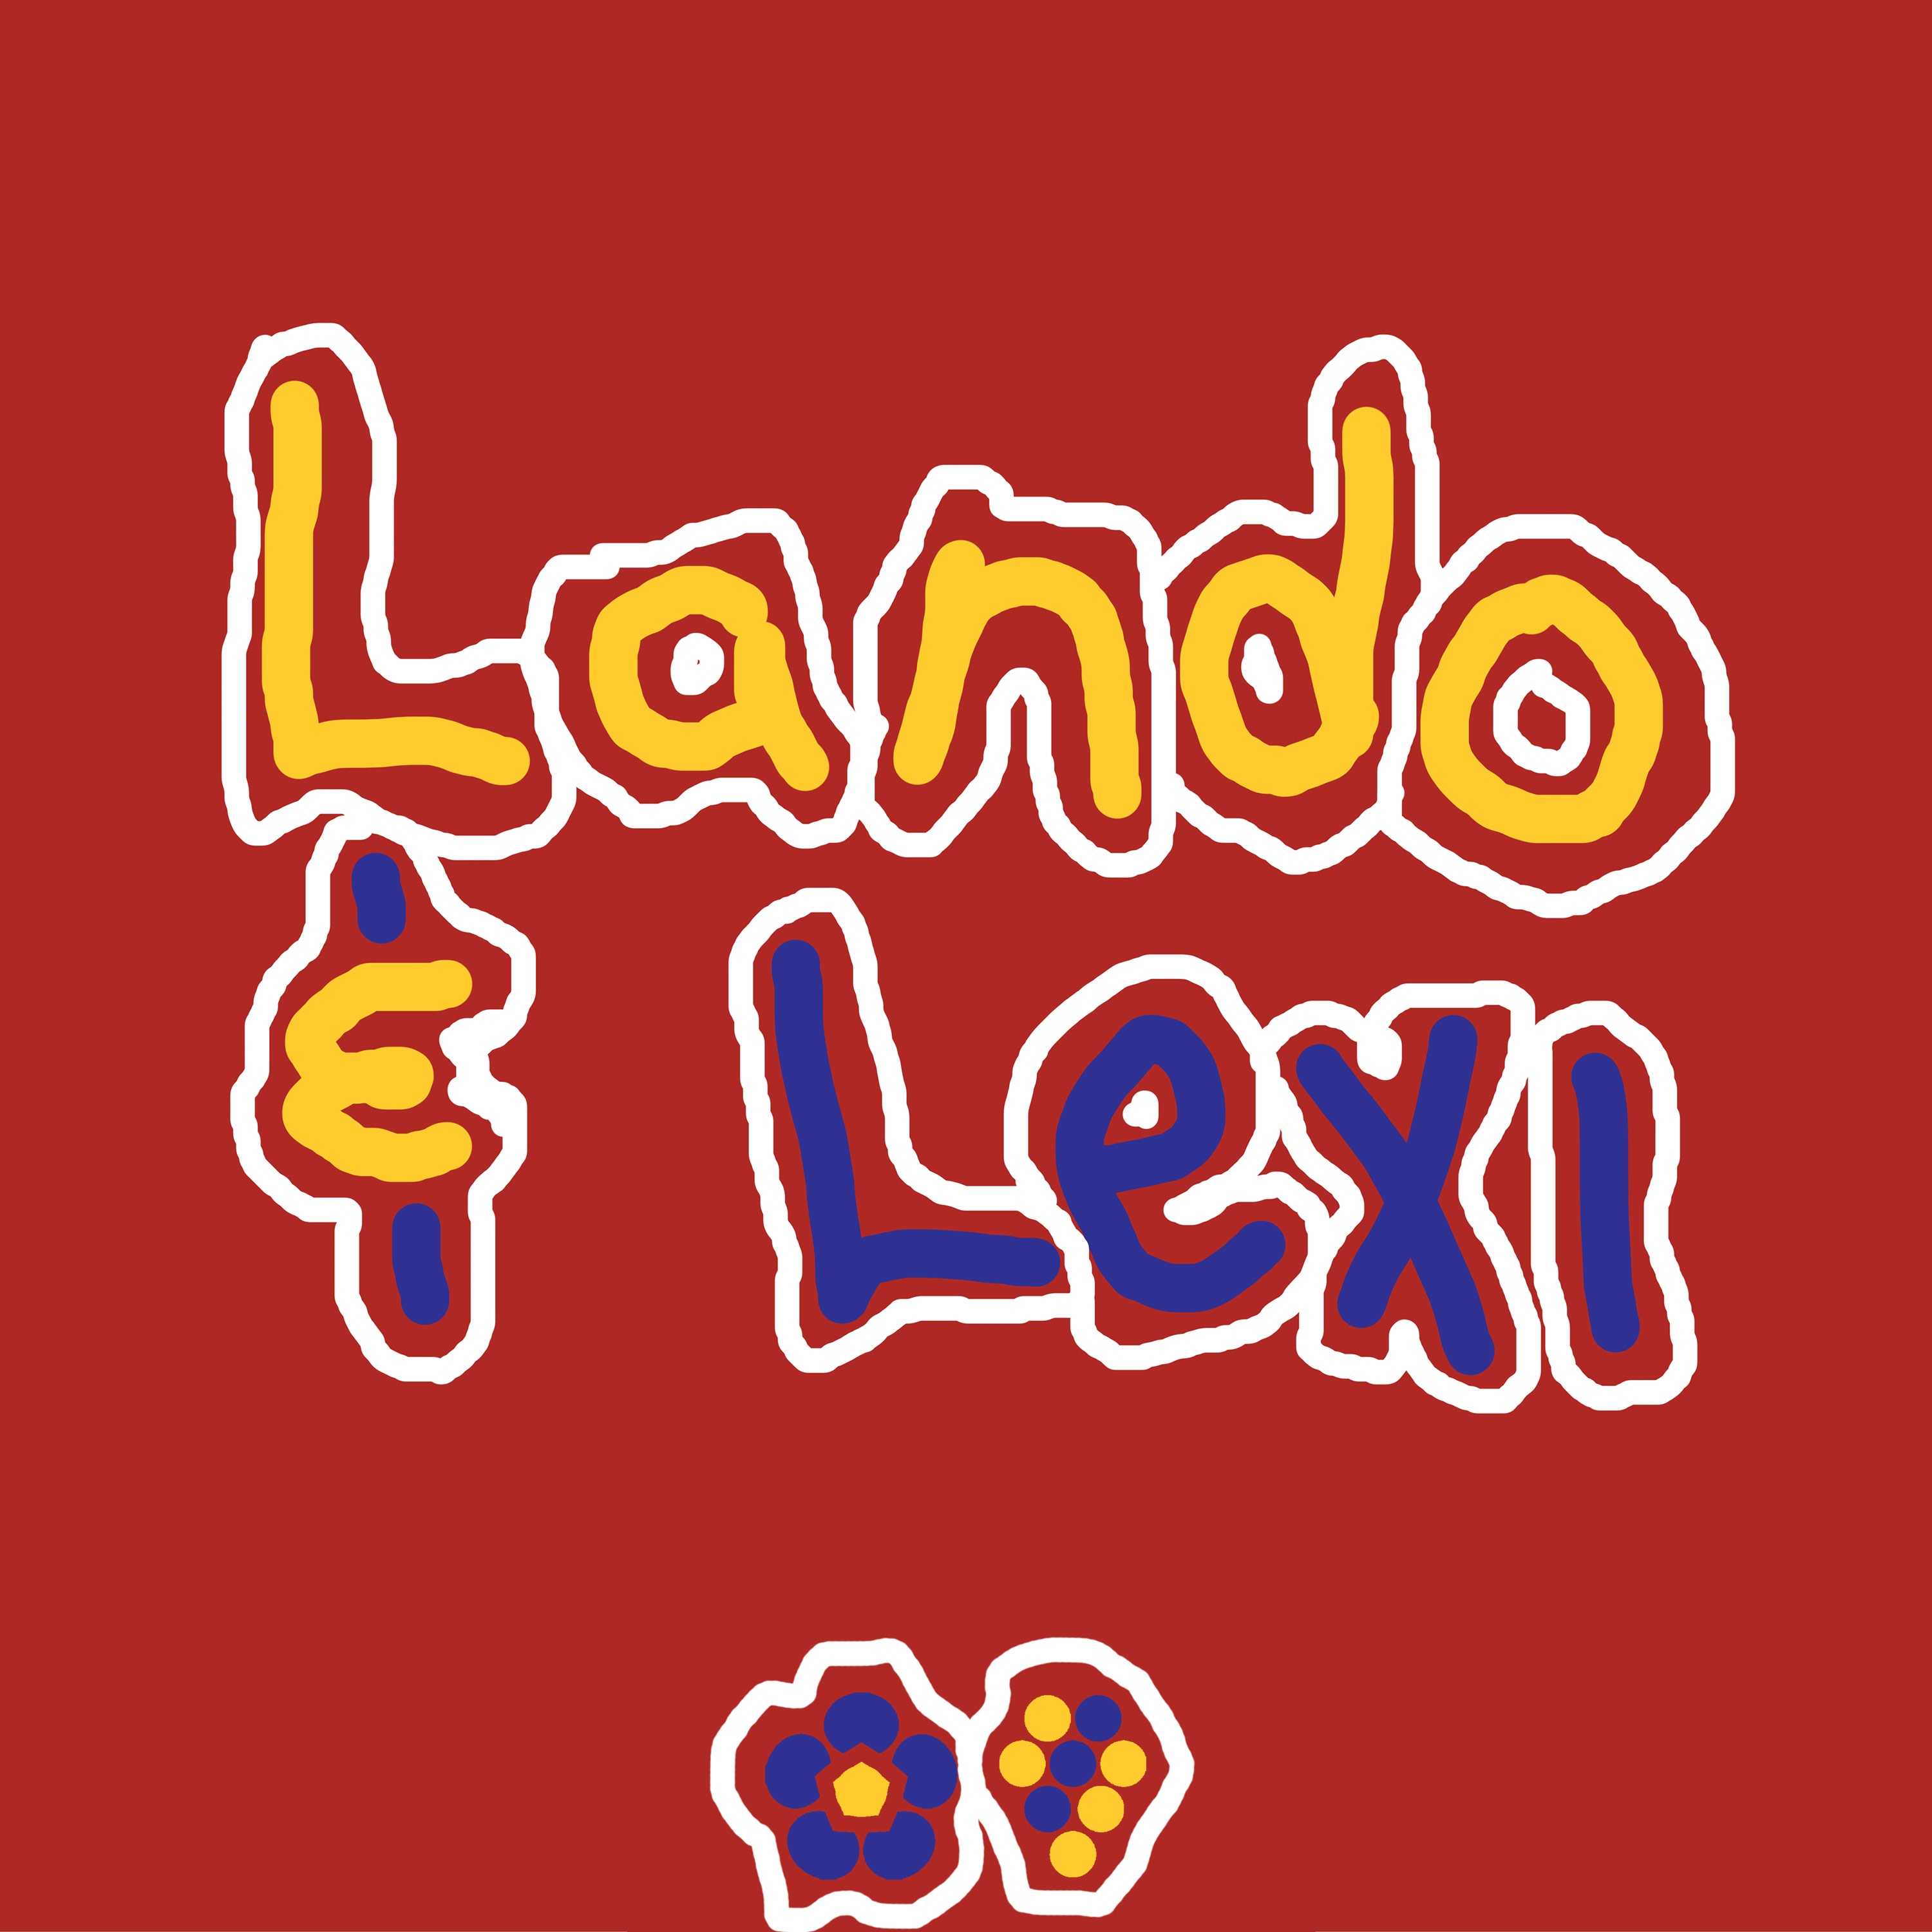 Show artwork for Lando and Lexi